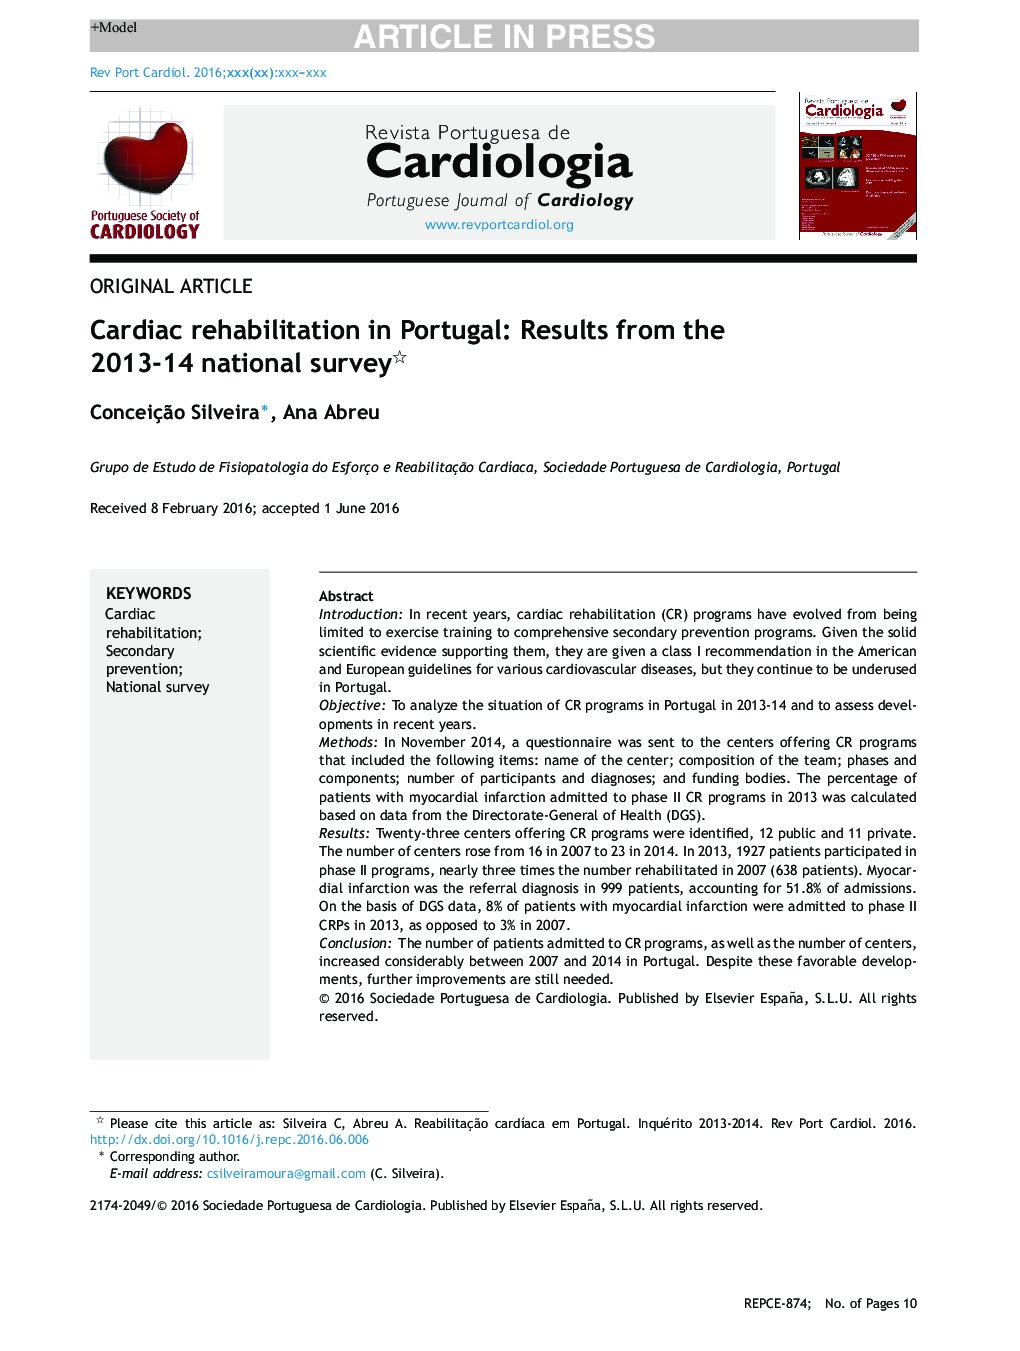 توانبخشی قلب در پرتغال: نتایج بررسی ملی سال 2013-14 